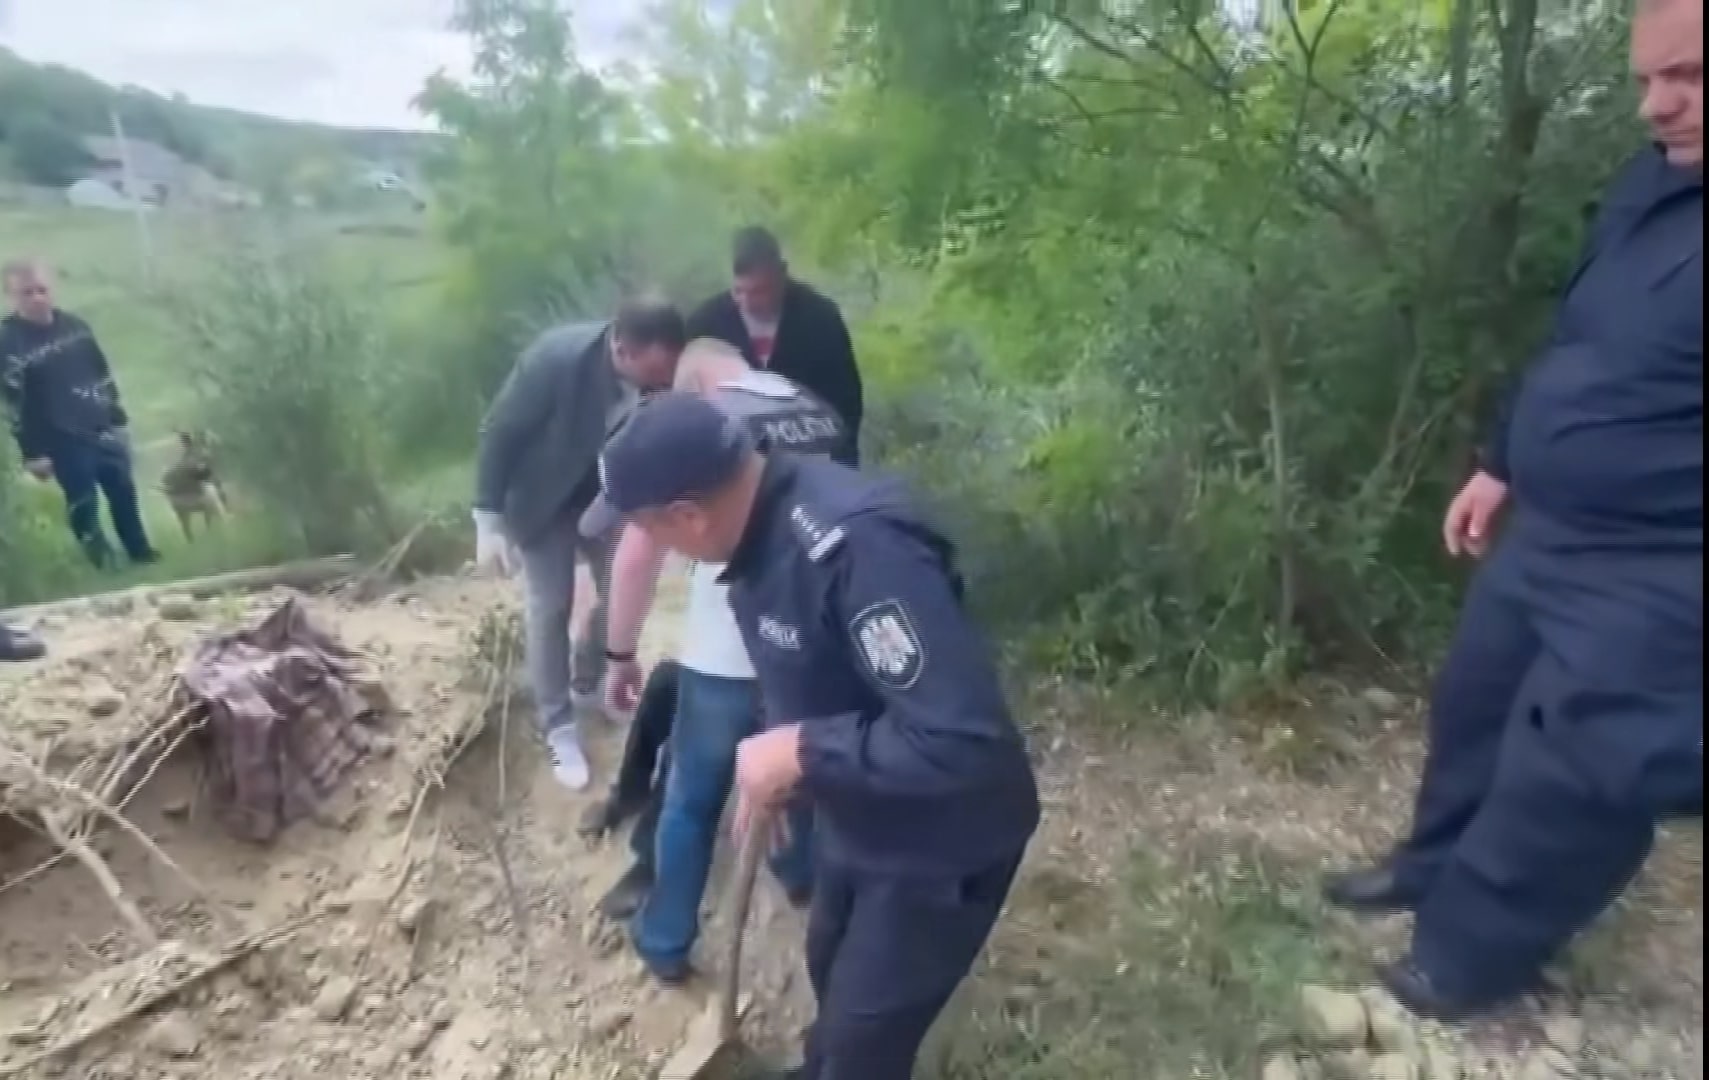 Les agents de la police nationale de Moldavie sont parvenus à secourir la victime qui était enfermée depuis trois jours. Capture d'écran Facebook/Poliția Republicii Moldova